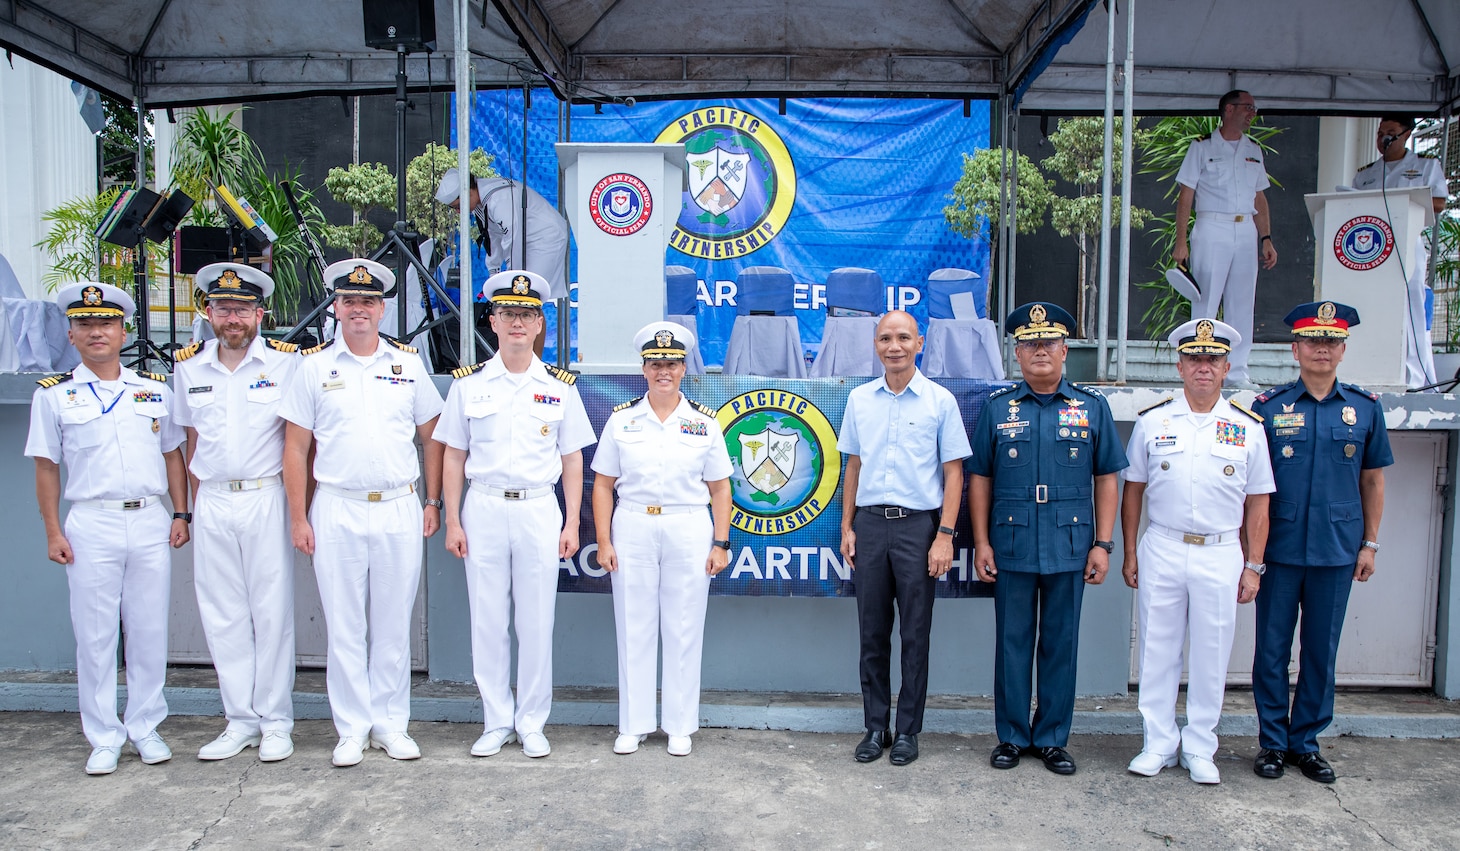 La Asociación del Pacífico regresa a Filipinas > Flota del Pacífico de EE. UU. > Noticias